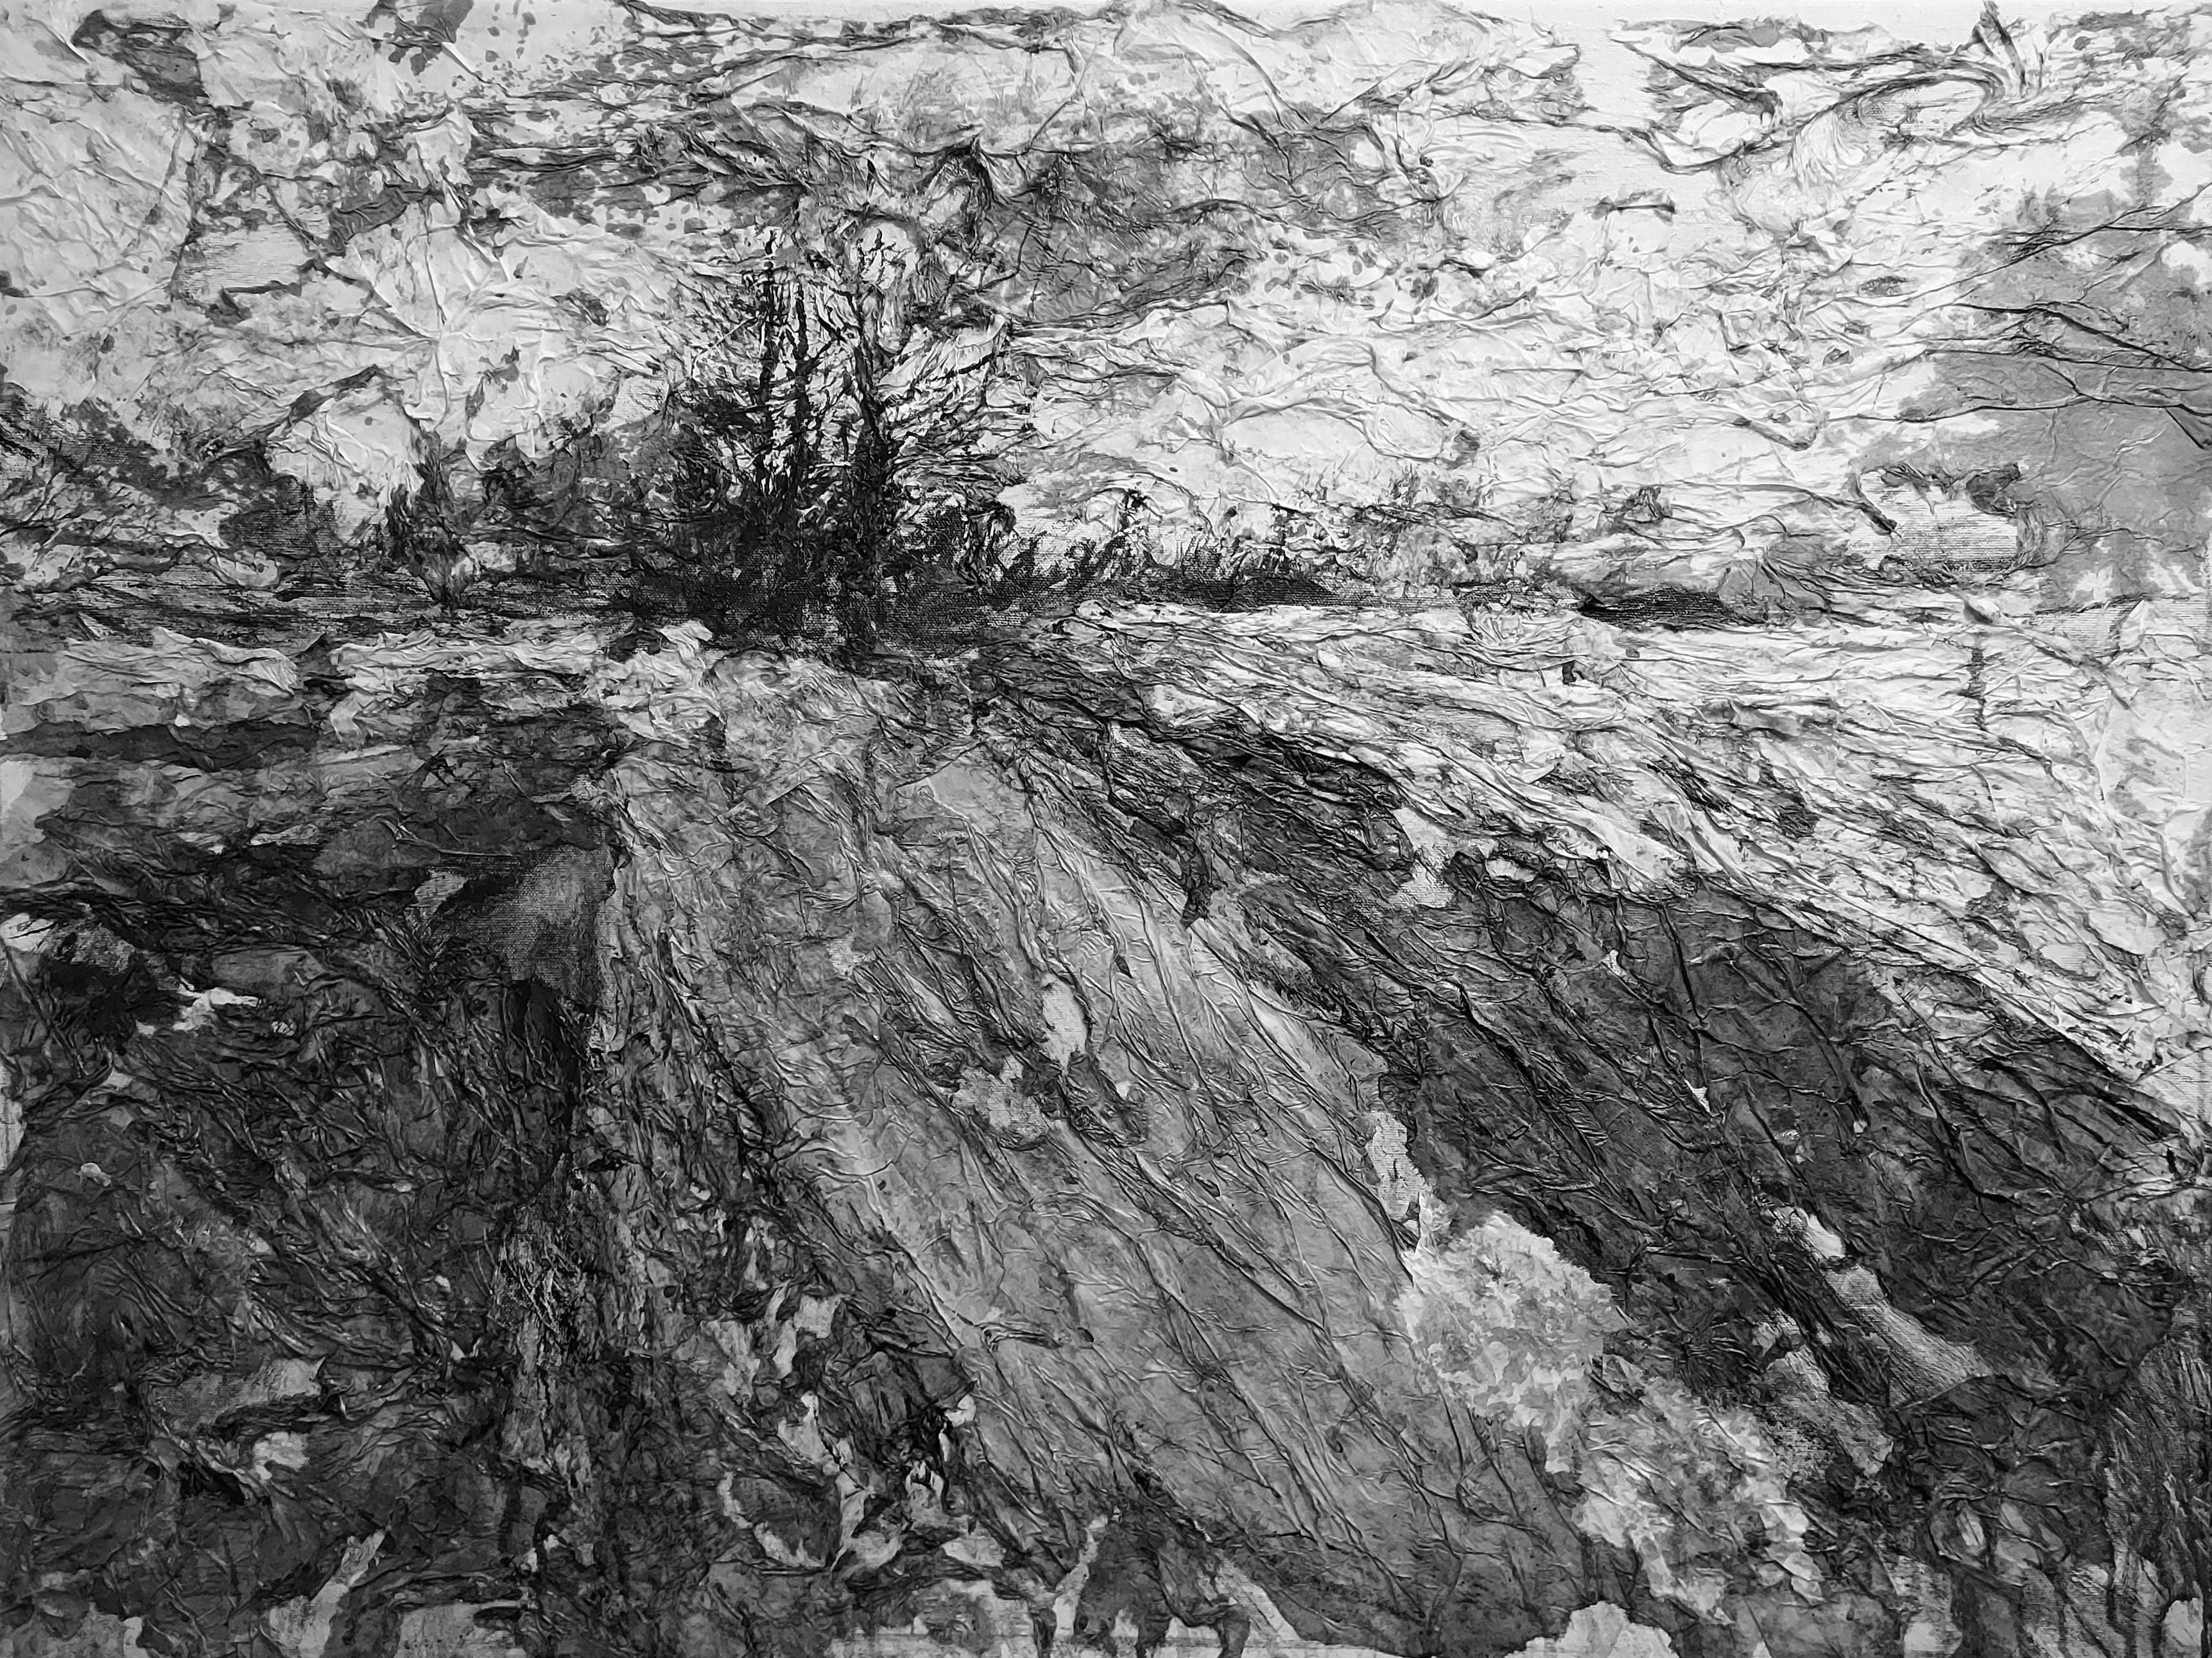 AsyaDodina SlavaPolishchuk Landscape Painting - Road XIII, monochromatic landscape, black and white and grey